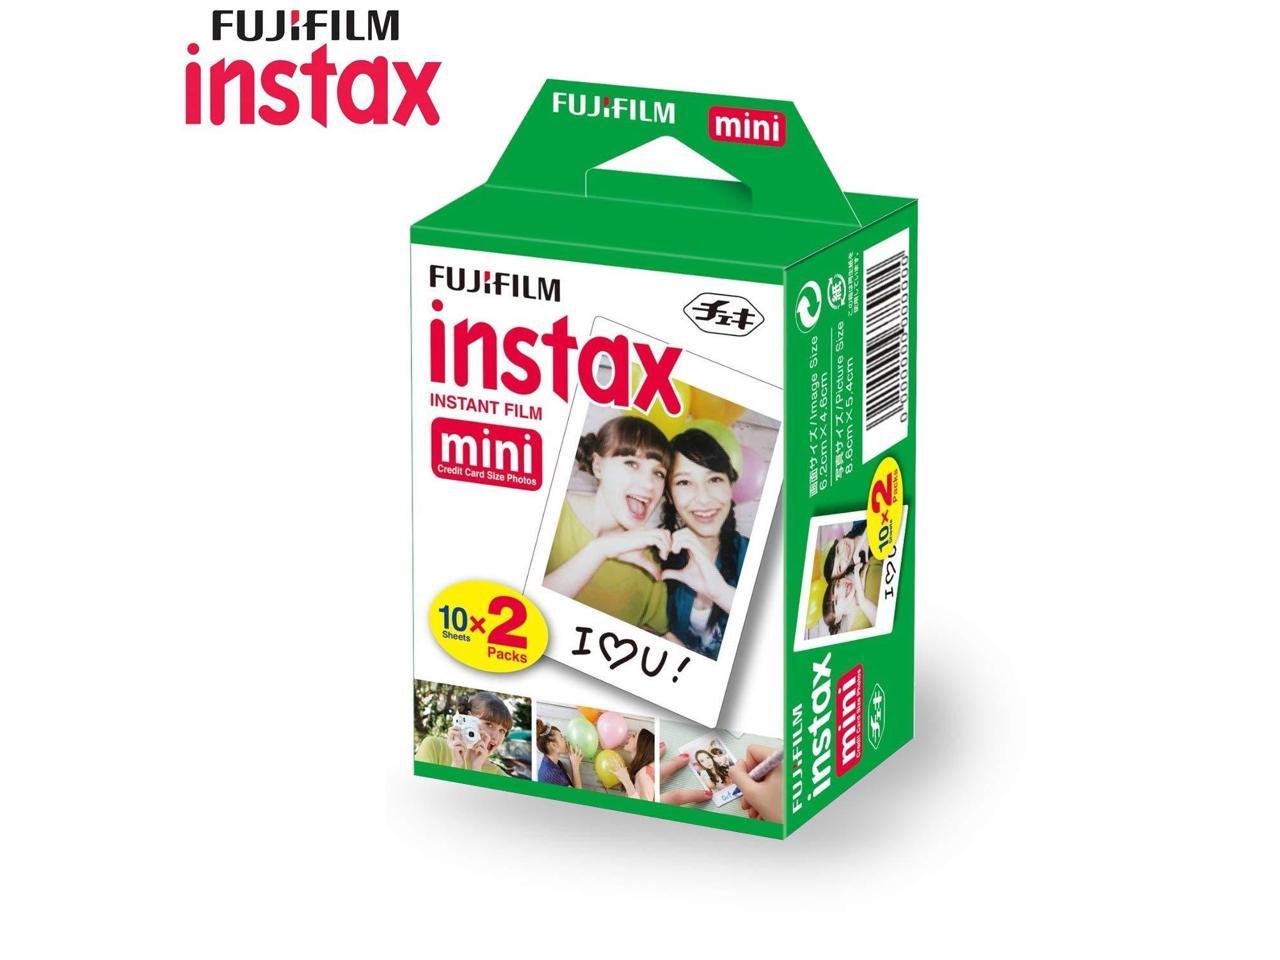 Edelsteen Merg Onleesbaar Fujifilm INSTAX Mini Instant Film - 20 Exposures Pack - Newegg.com